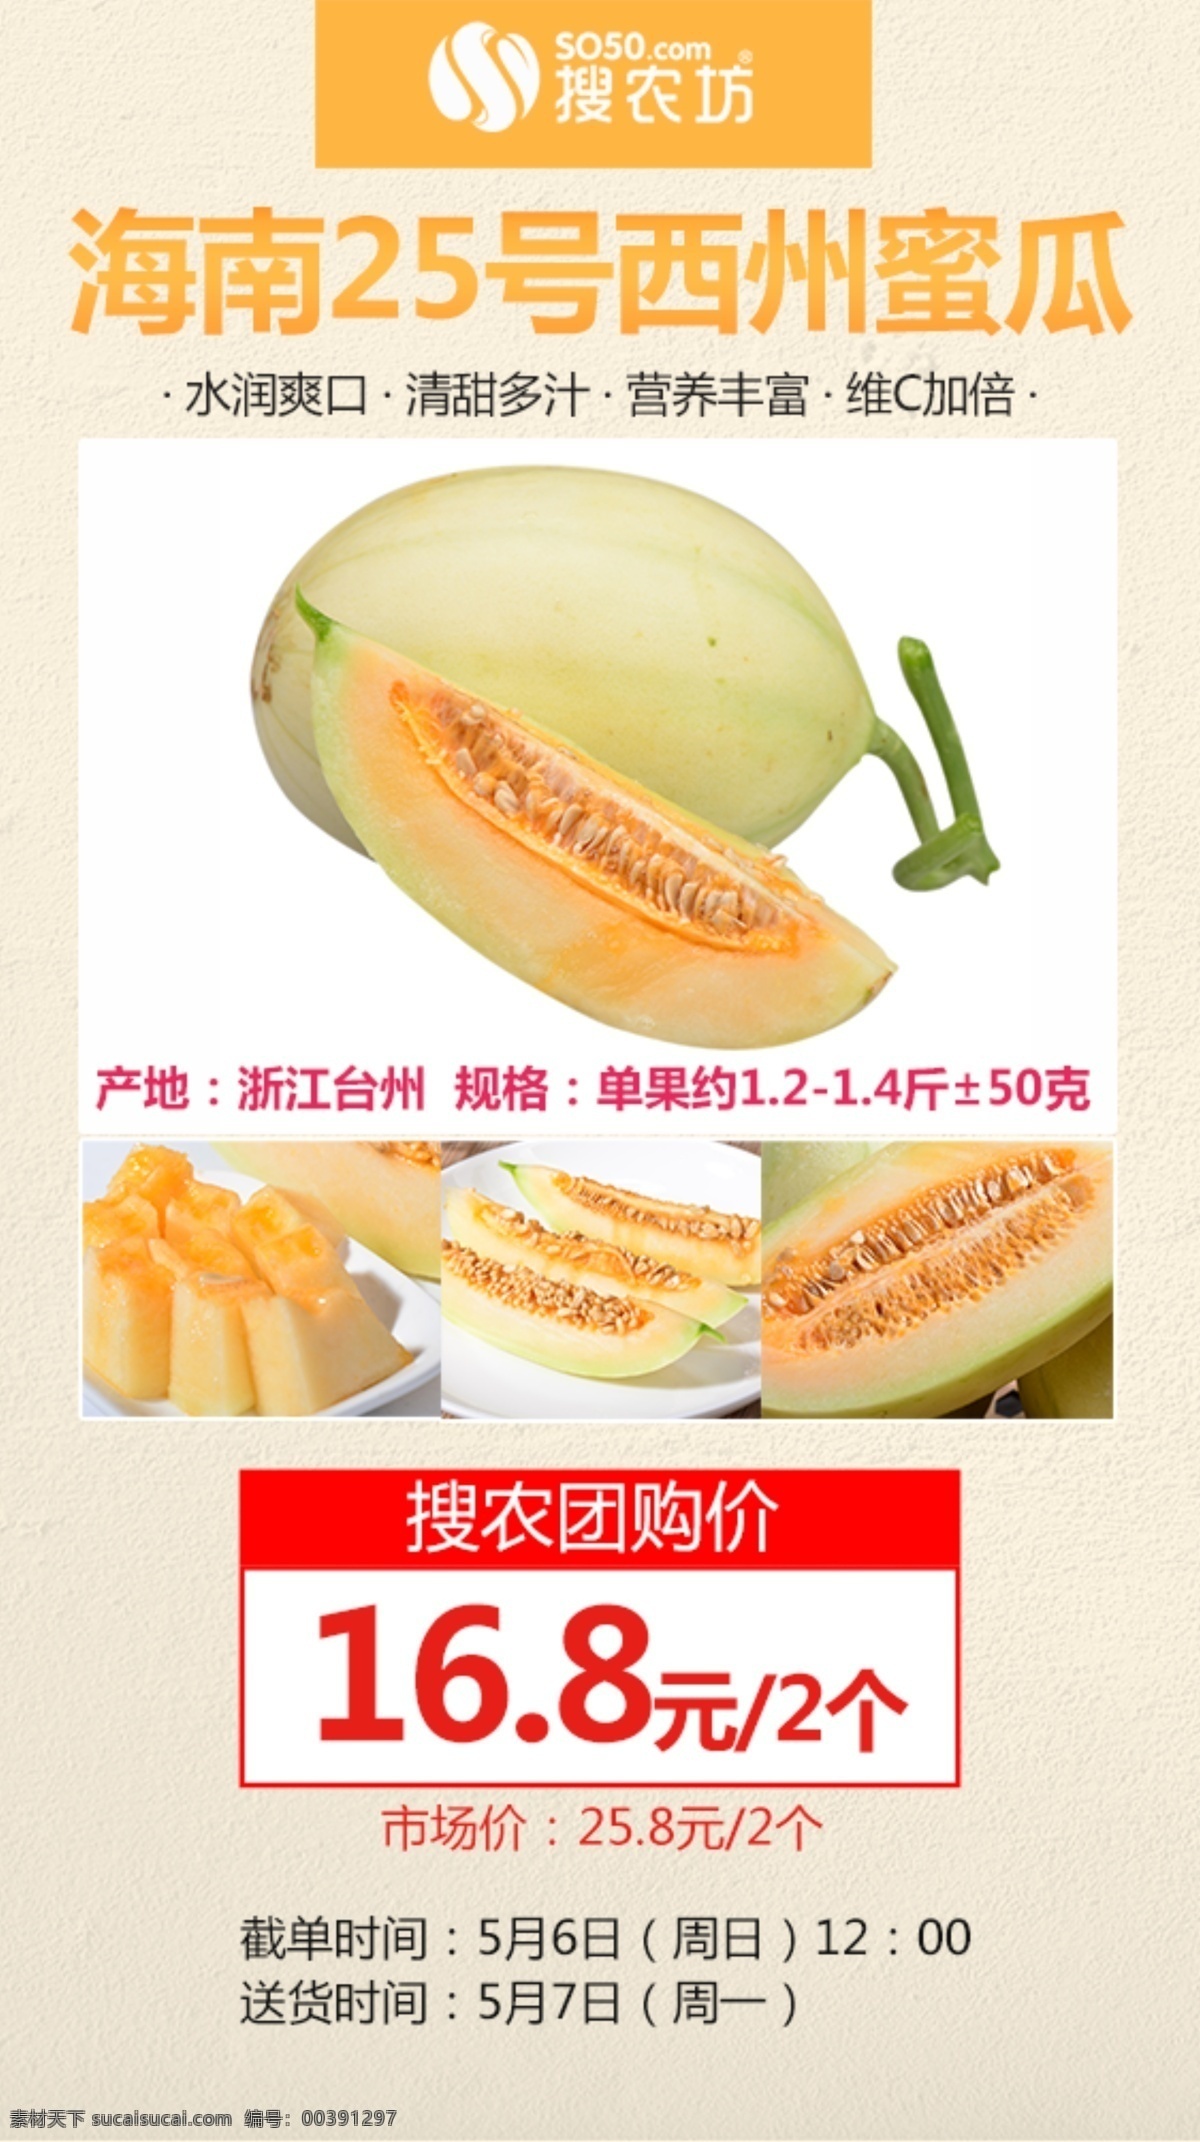 东方蜜甜瓜 农产品 宣传海报 微商 电商 群宣传 水果 产品 秒 杀 相关 图